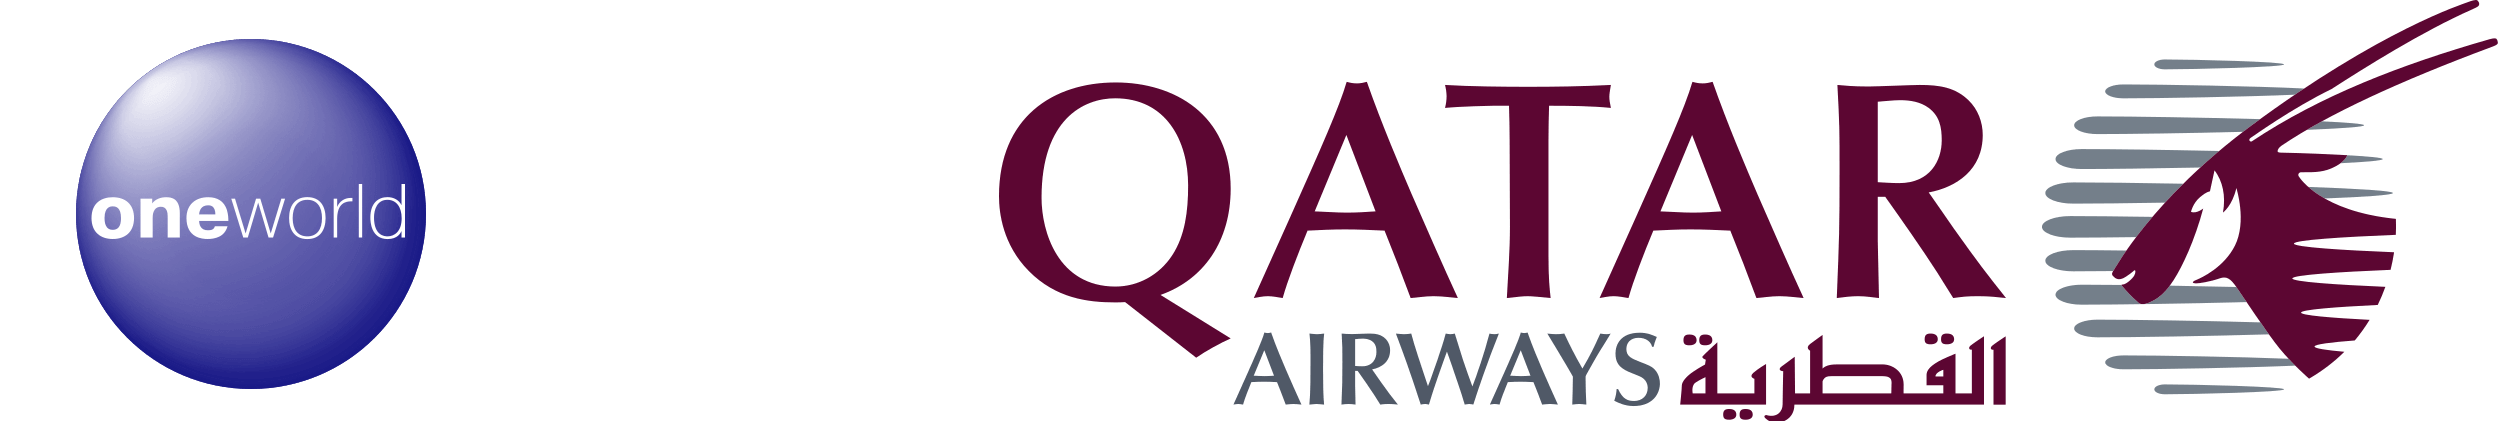 Qatar Airways and Oneway